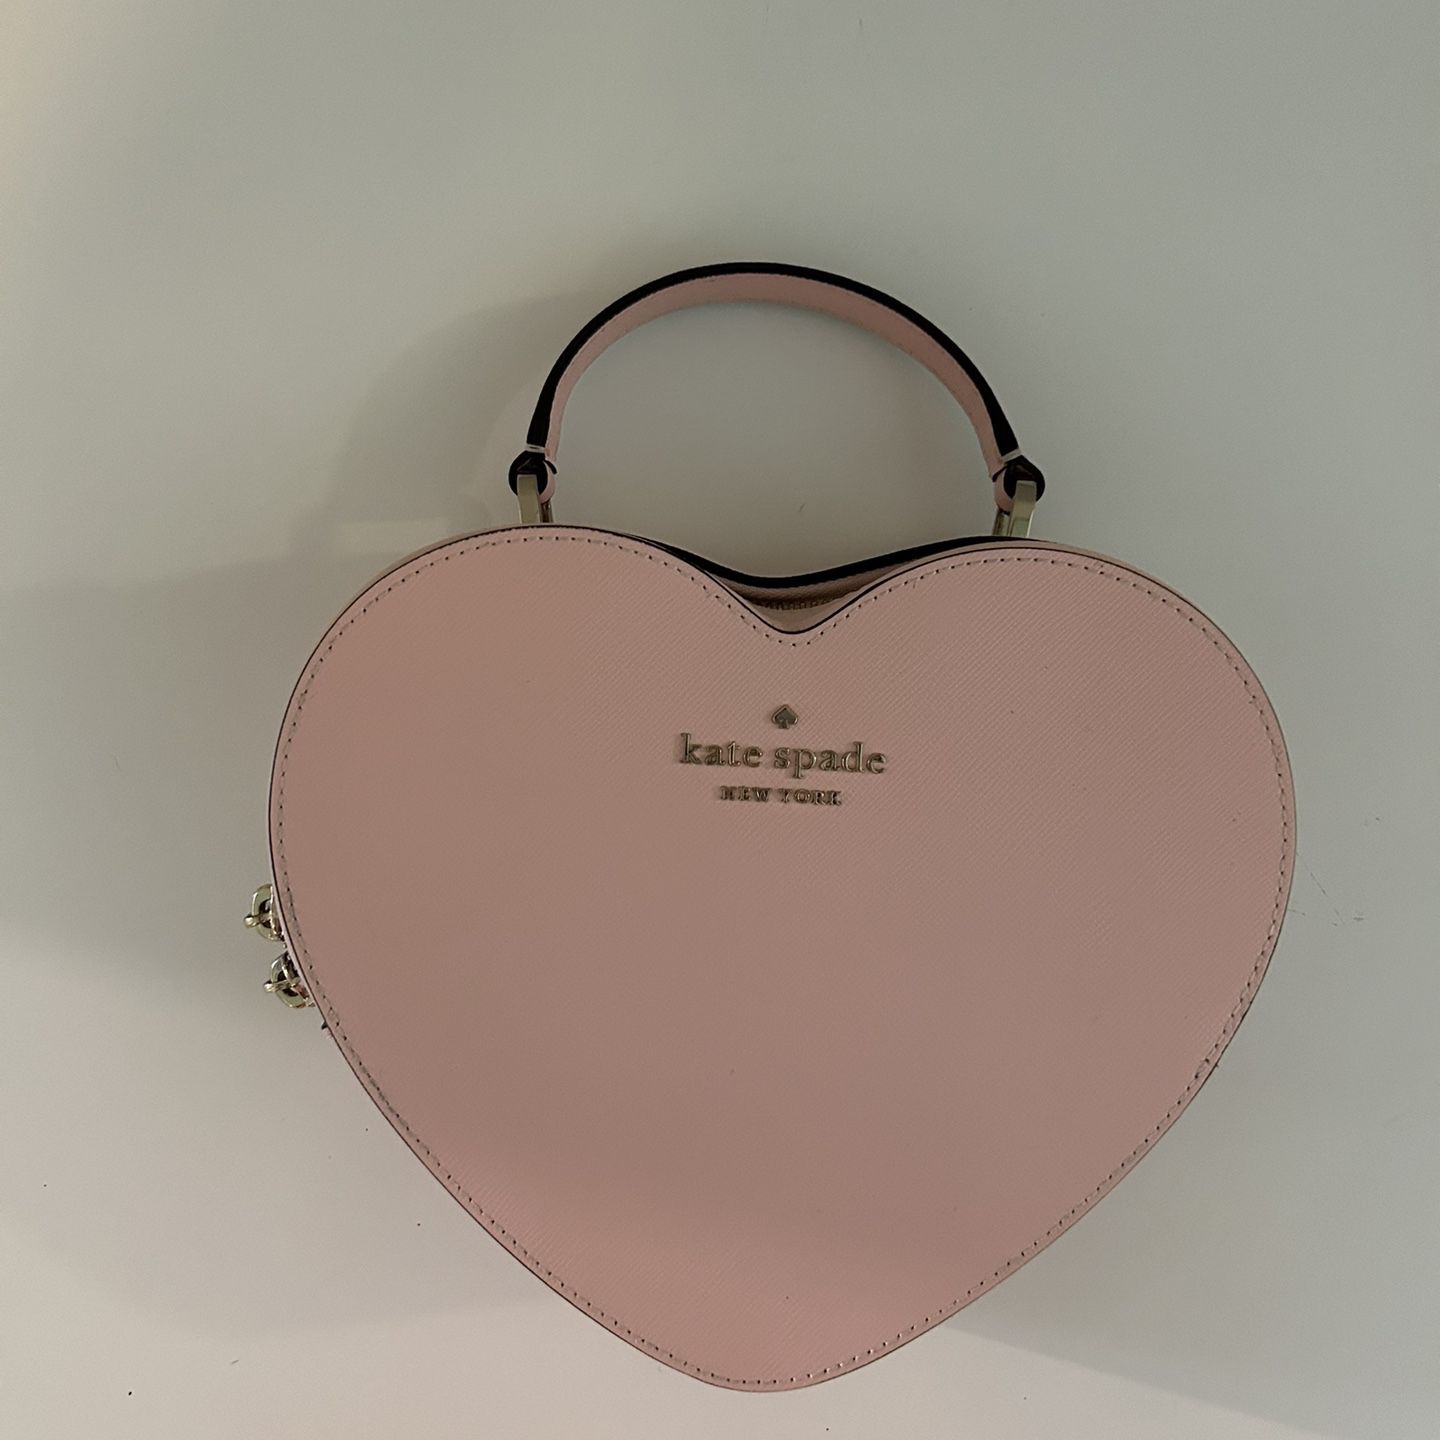 Kate Spade Love Shack Heart Bag for Sale in Little Ferry, NJ - OfferUp